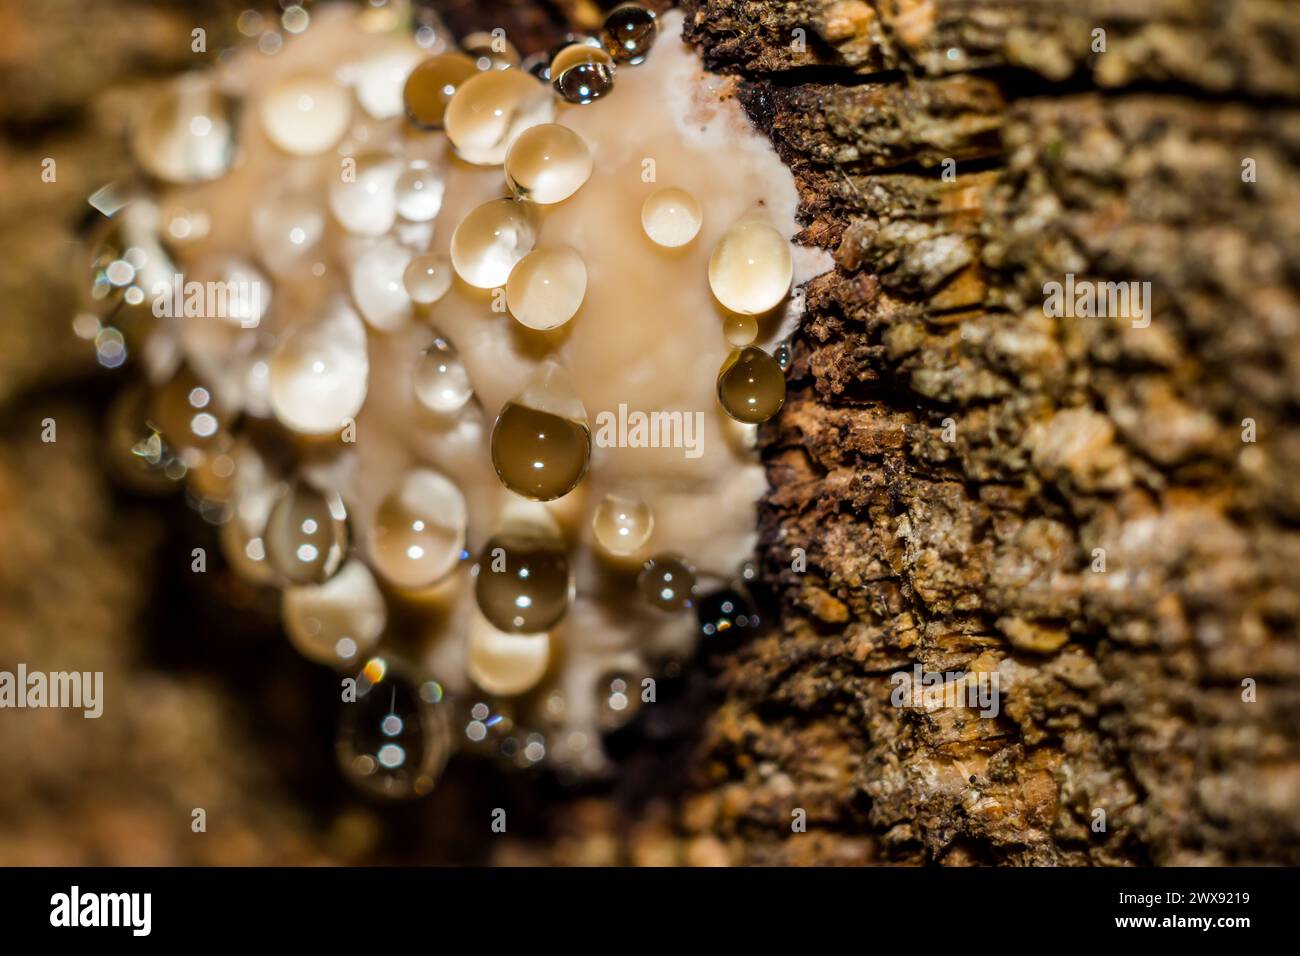 Rotgürtelkonkenpilz (Fomitopsis pinicola) - ein Trauerpilz, der Tropfen Wasser absondert. Nahansicht Stockfoto